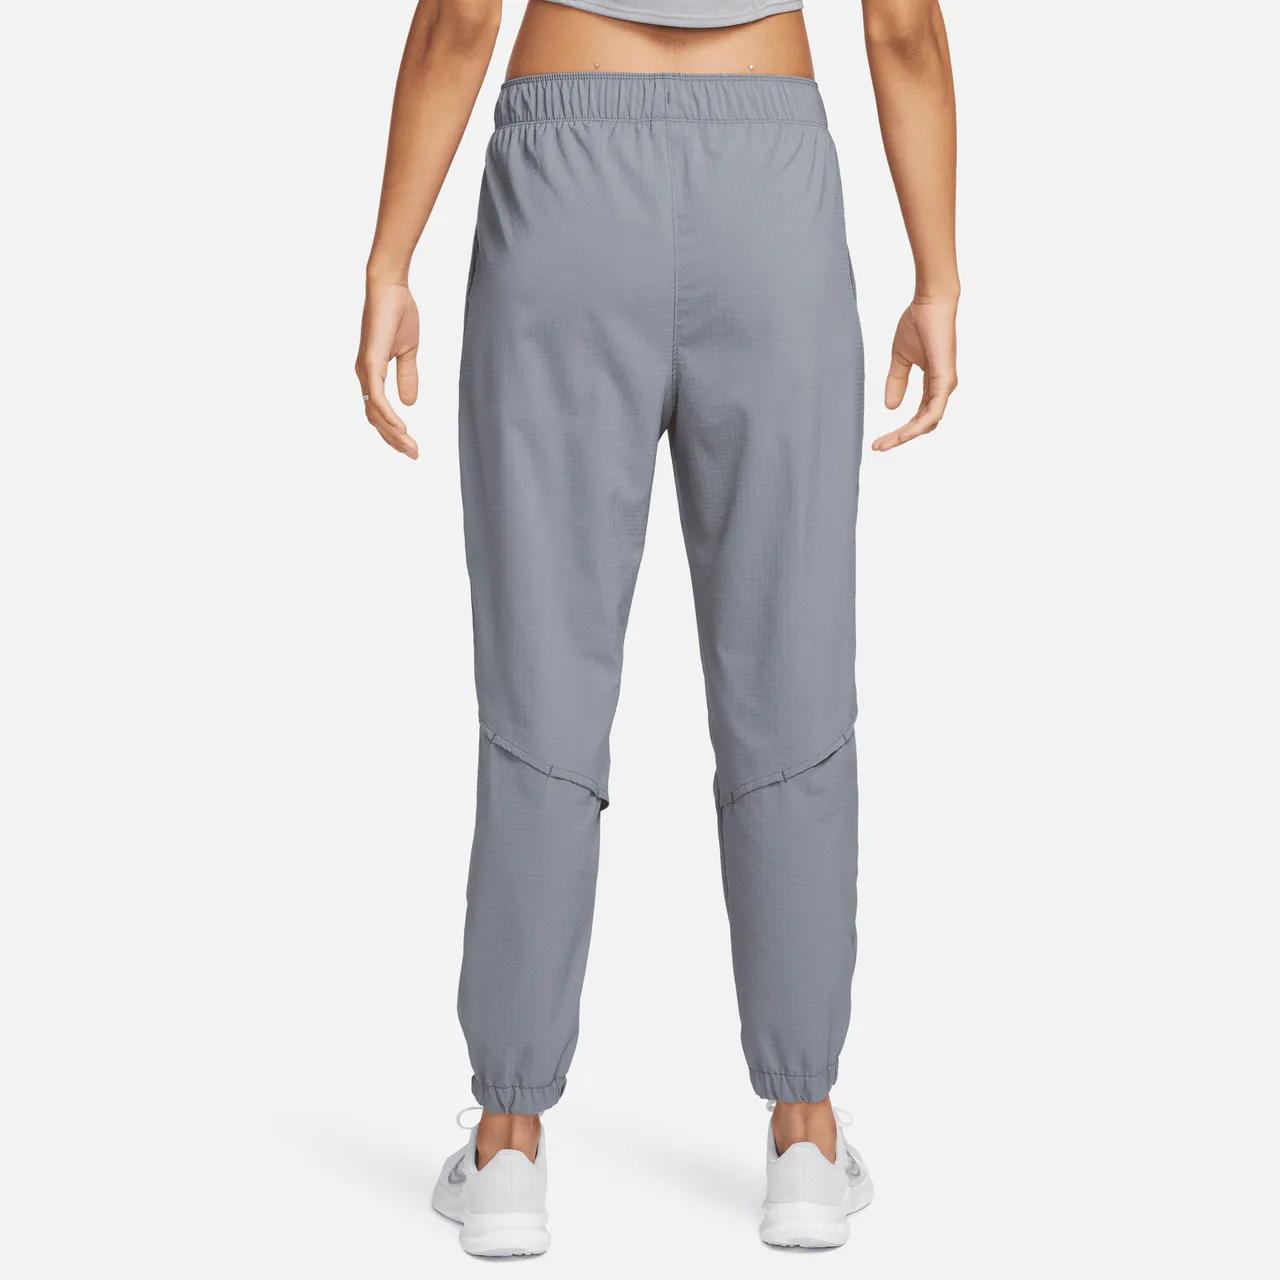 Nike Dri-FIT Fast 7/8-hardloopbroek met halfhoge taille voor warming-up voor dames - Grijs